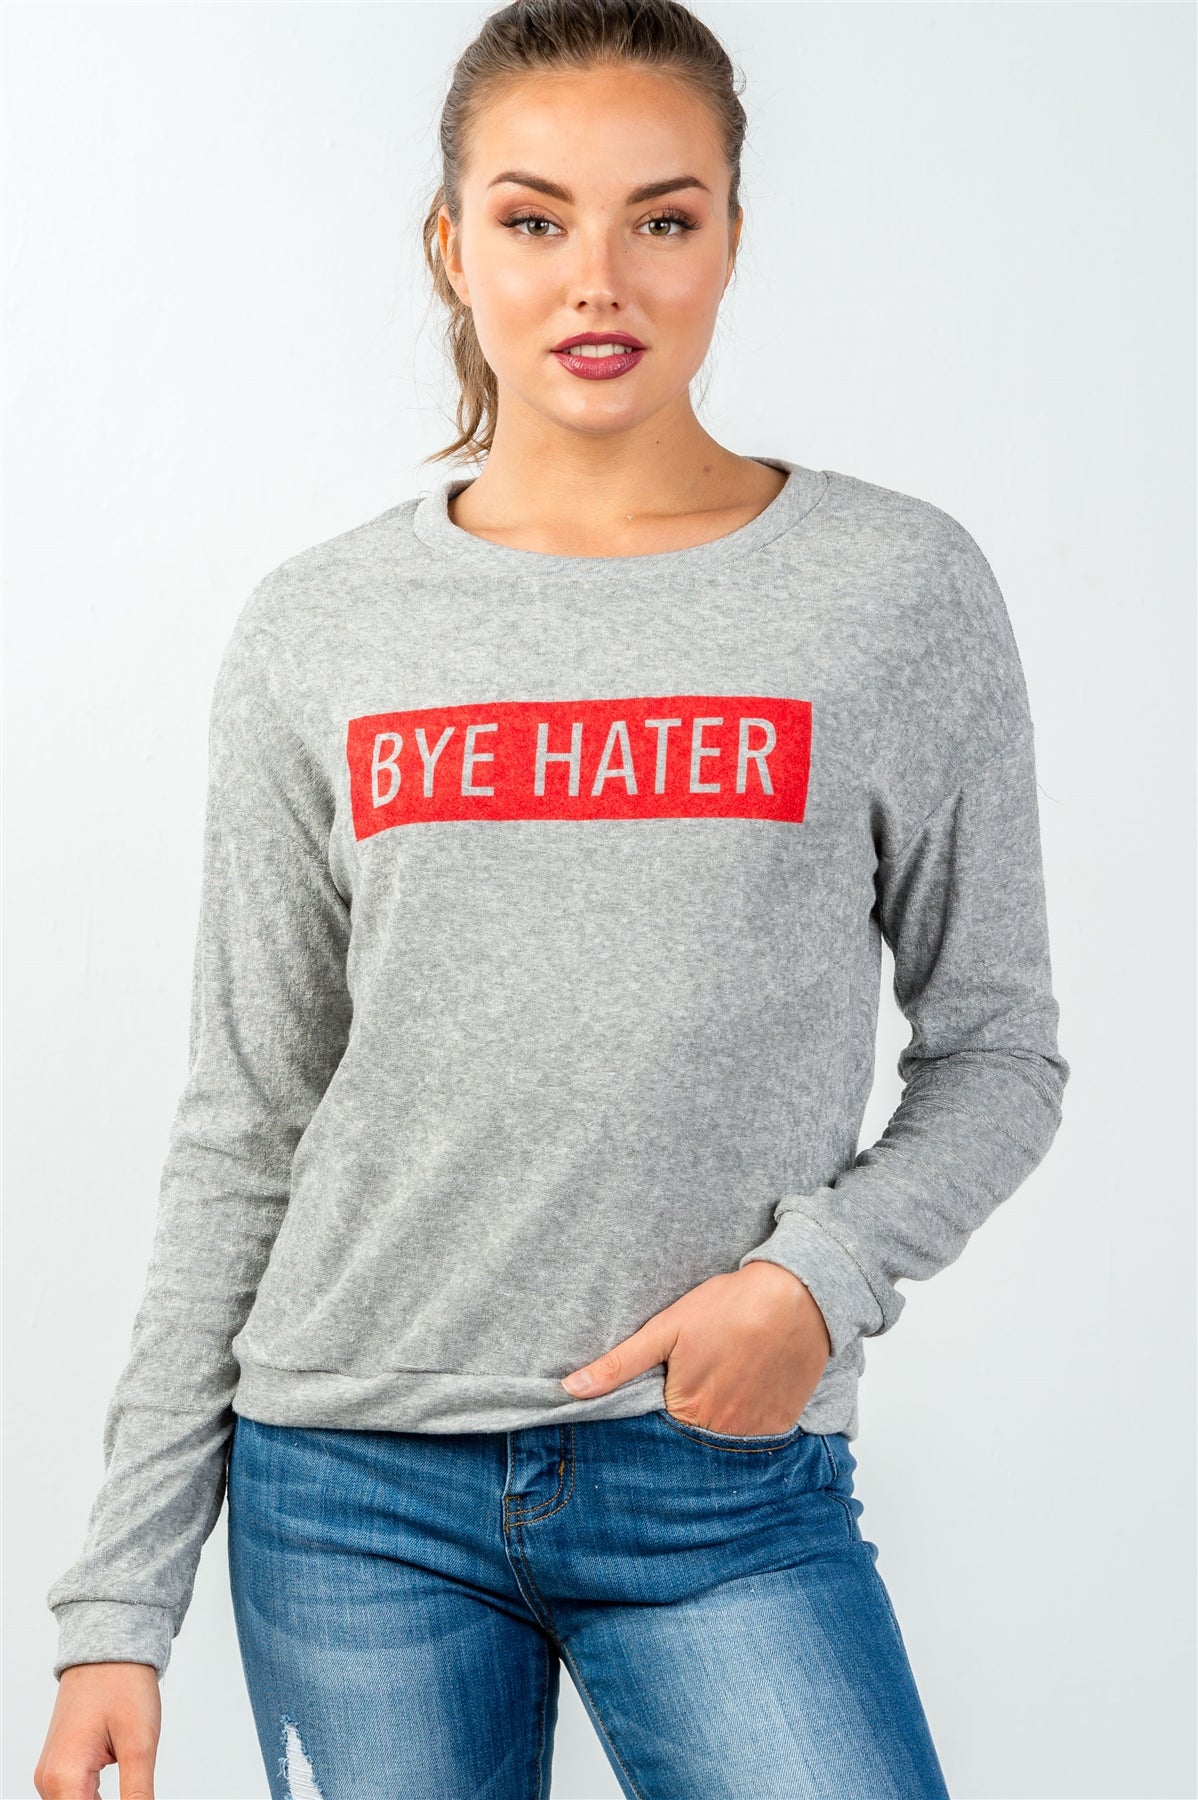 Ladies fashion crew neckline grey bye hater graphic sweatshirt